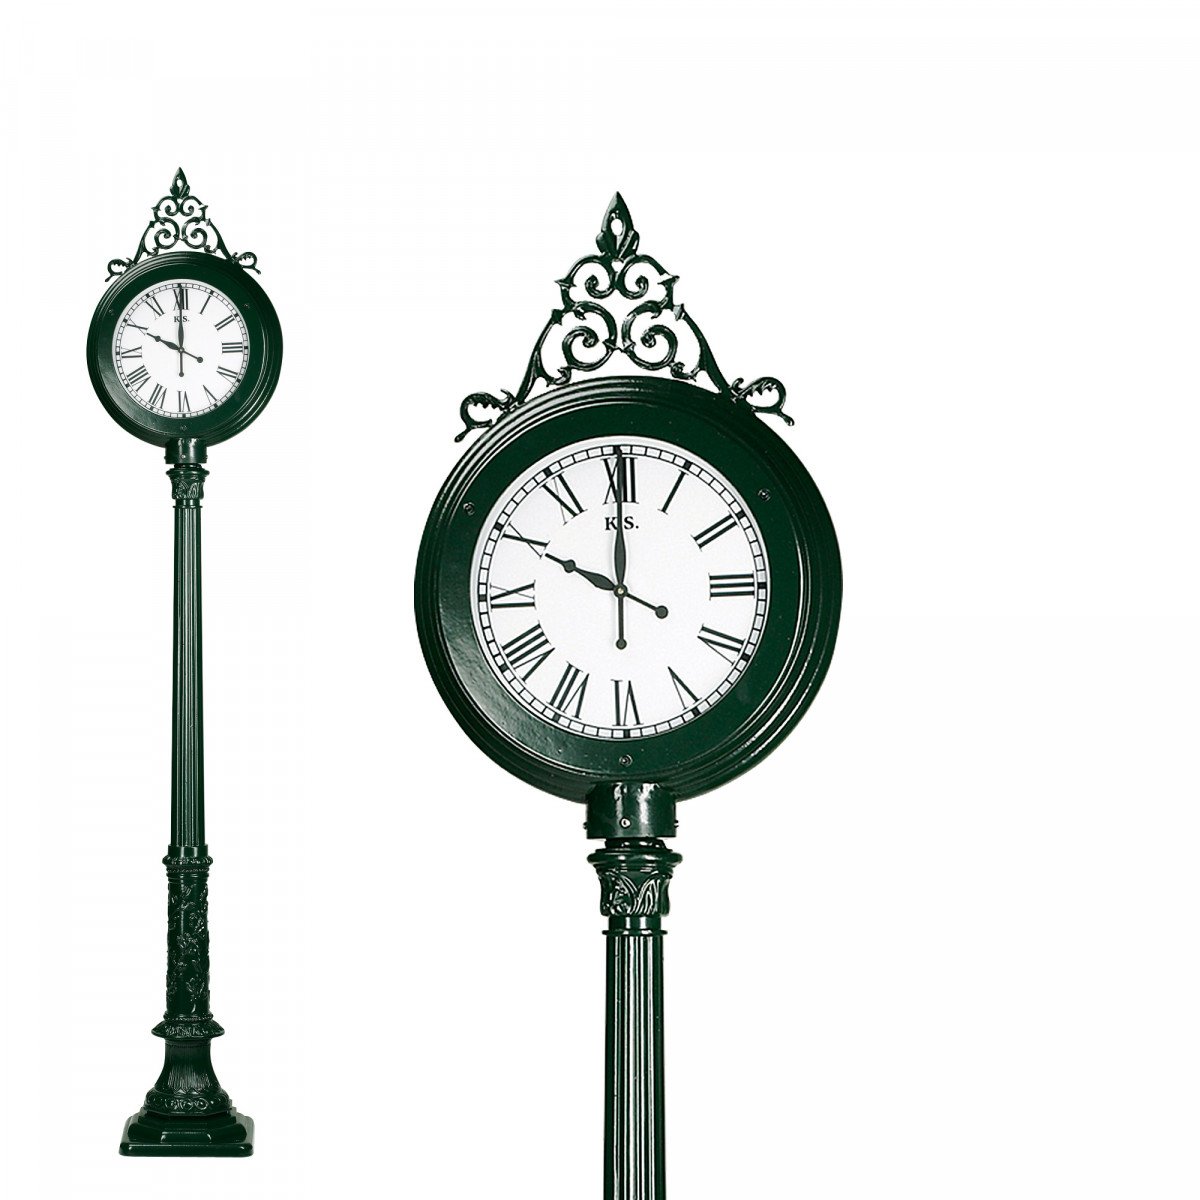 Railway clock L